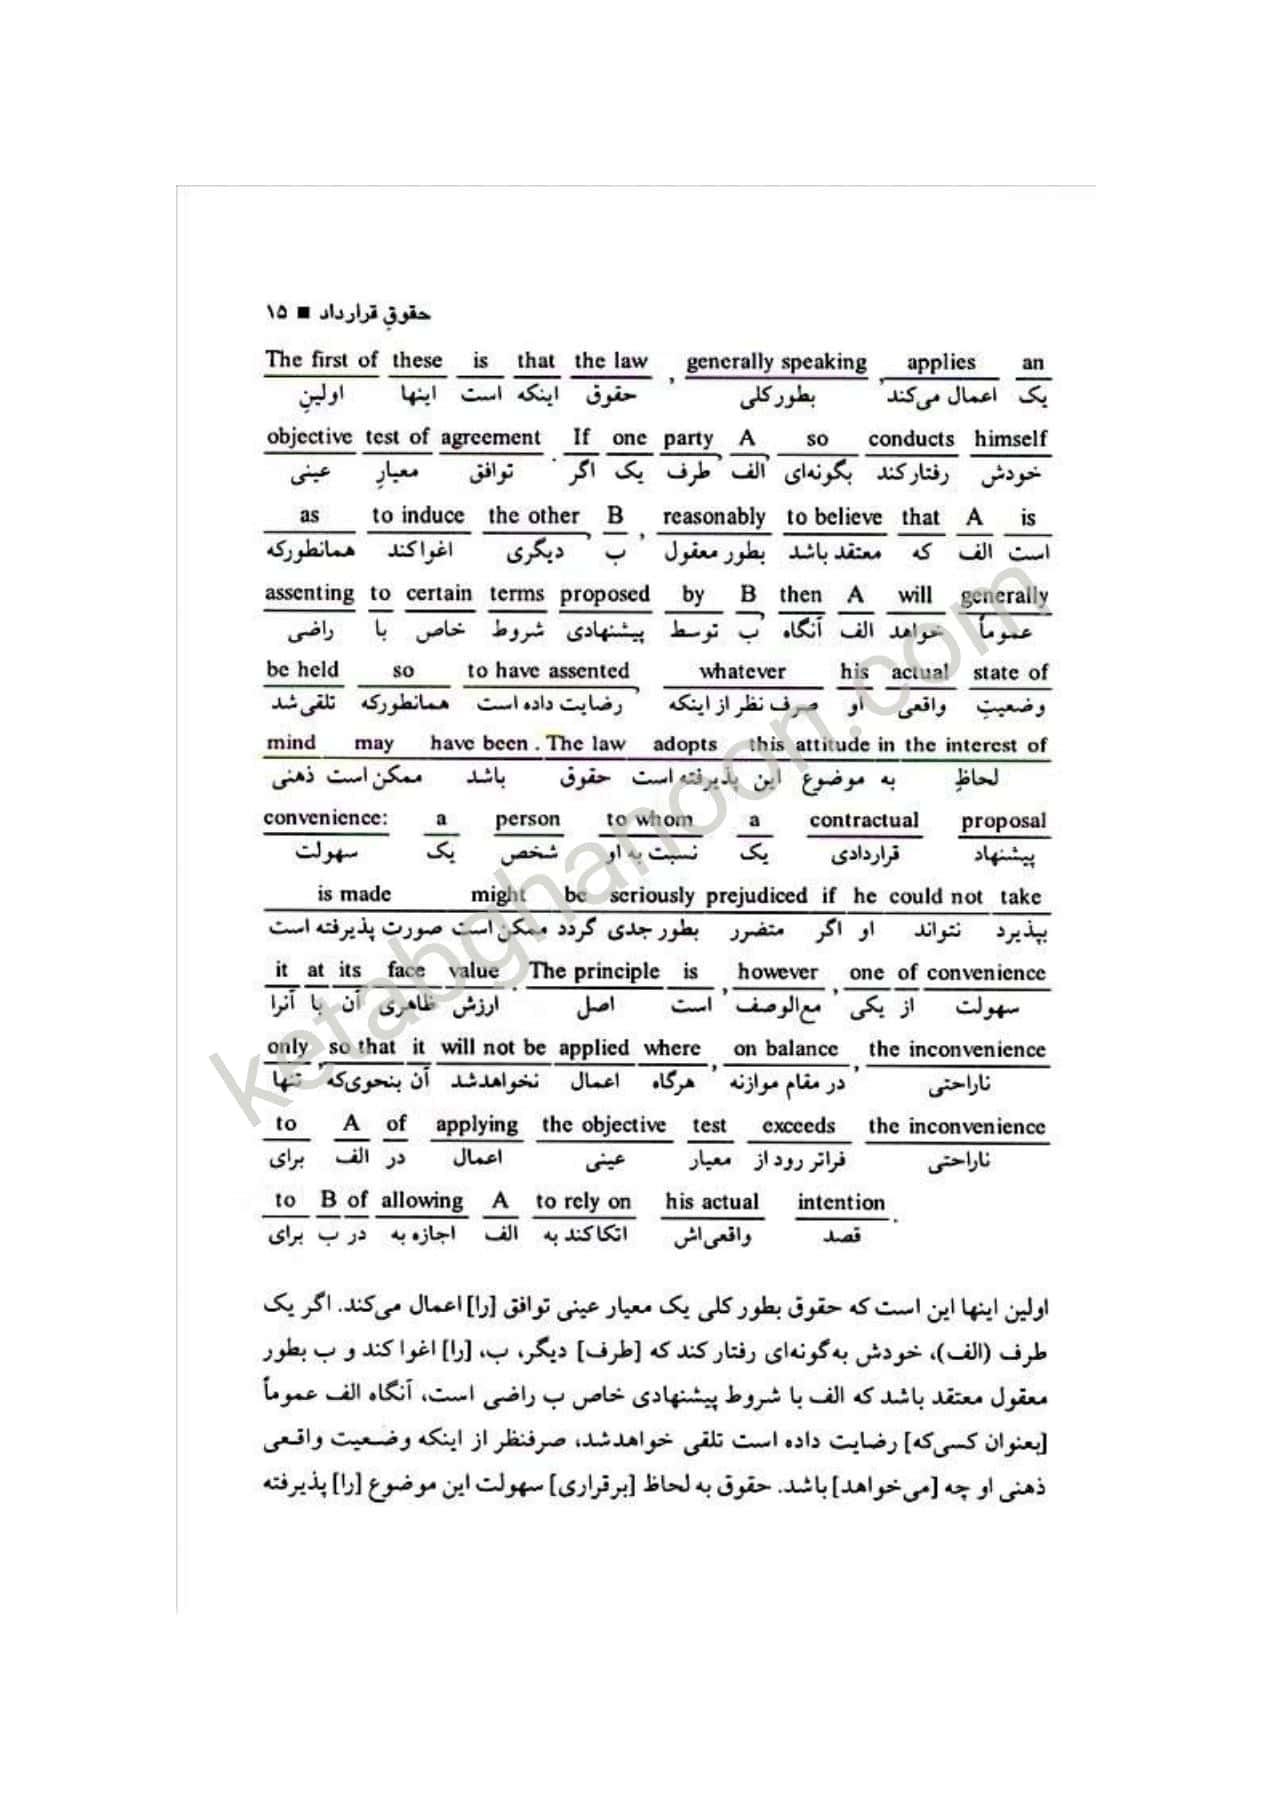 ترجمه تحت اللفظی و روان law texts محمود رمضانی